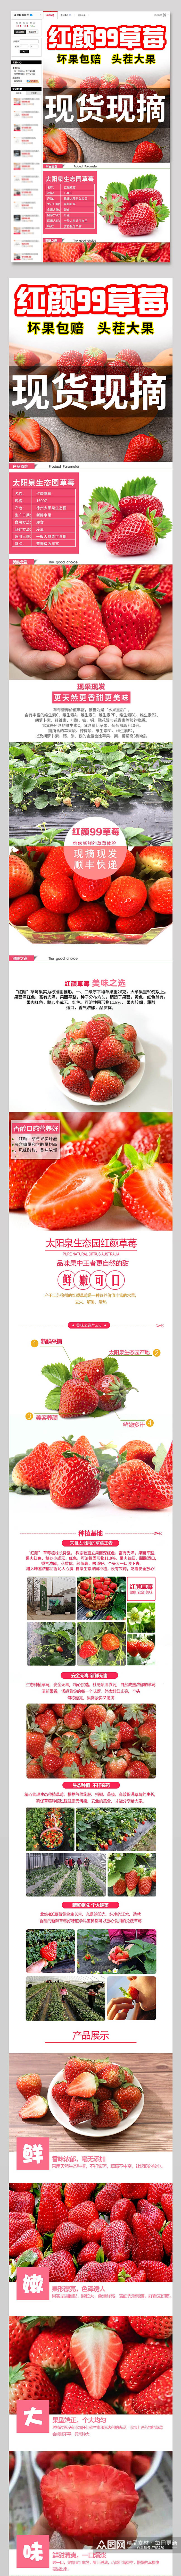 红颜99草莓美味详情页素材